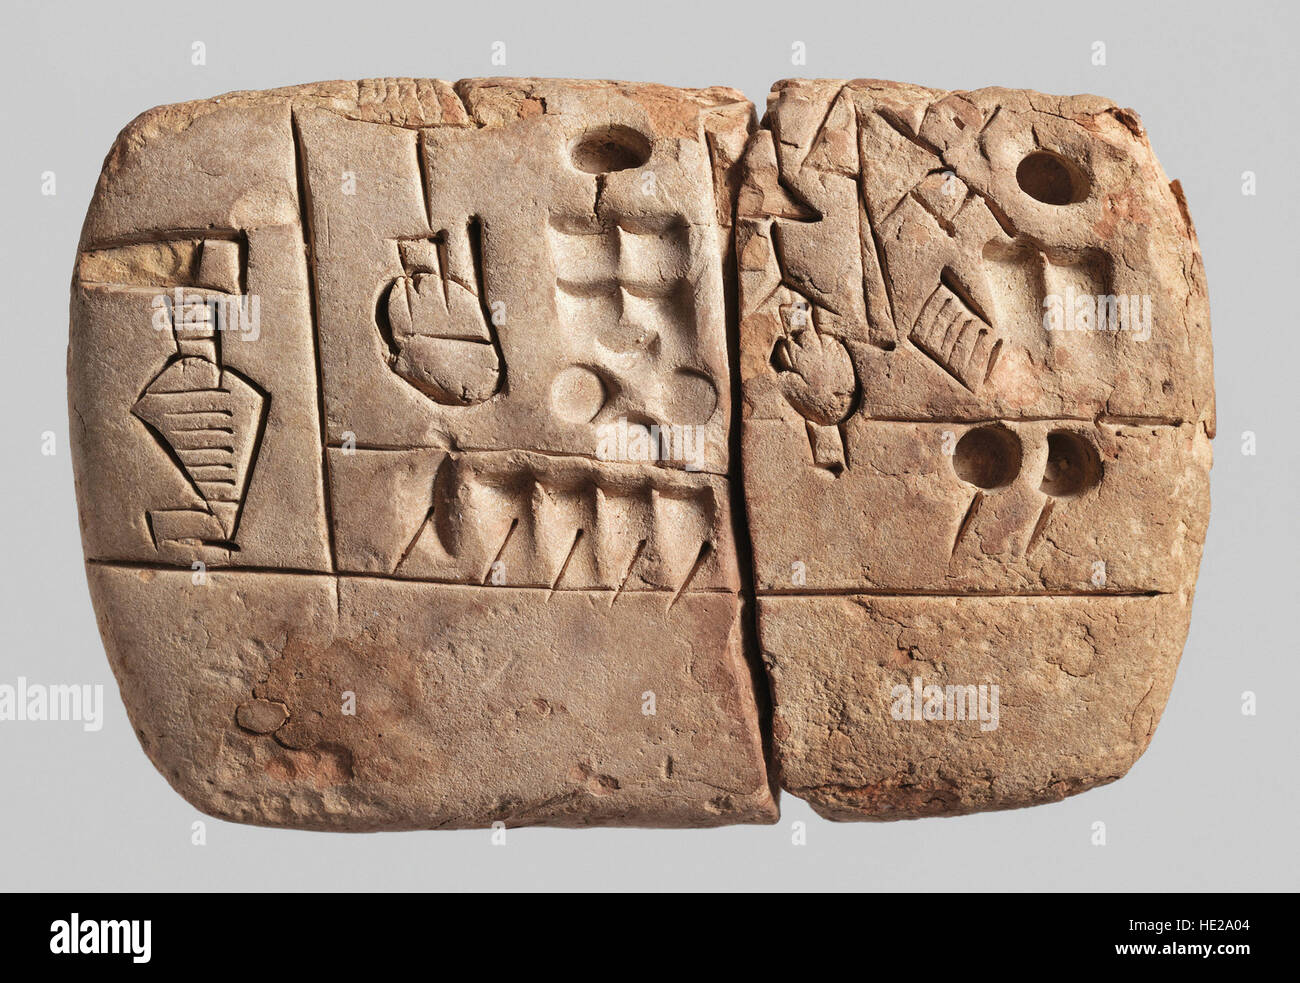 6010 frühe bildhafte Keilschrift Tontafel, Mesioitamia, Uruk, ca. 3100-2900 v. Chr.. Text befasst sich mit administrativen Konten über Korn verkau Stockfoto